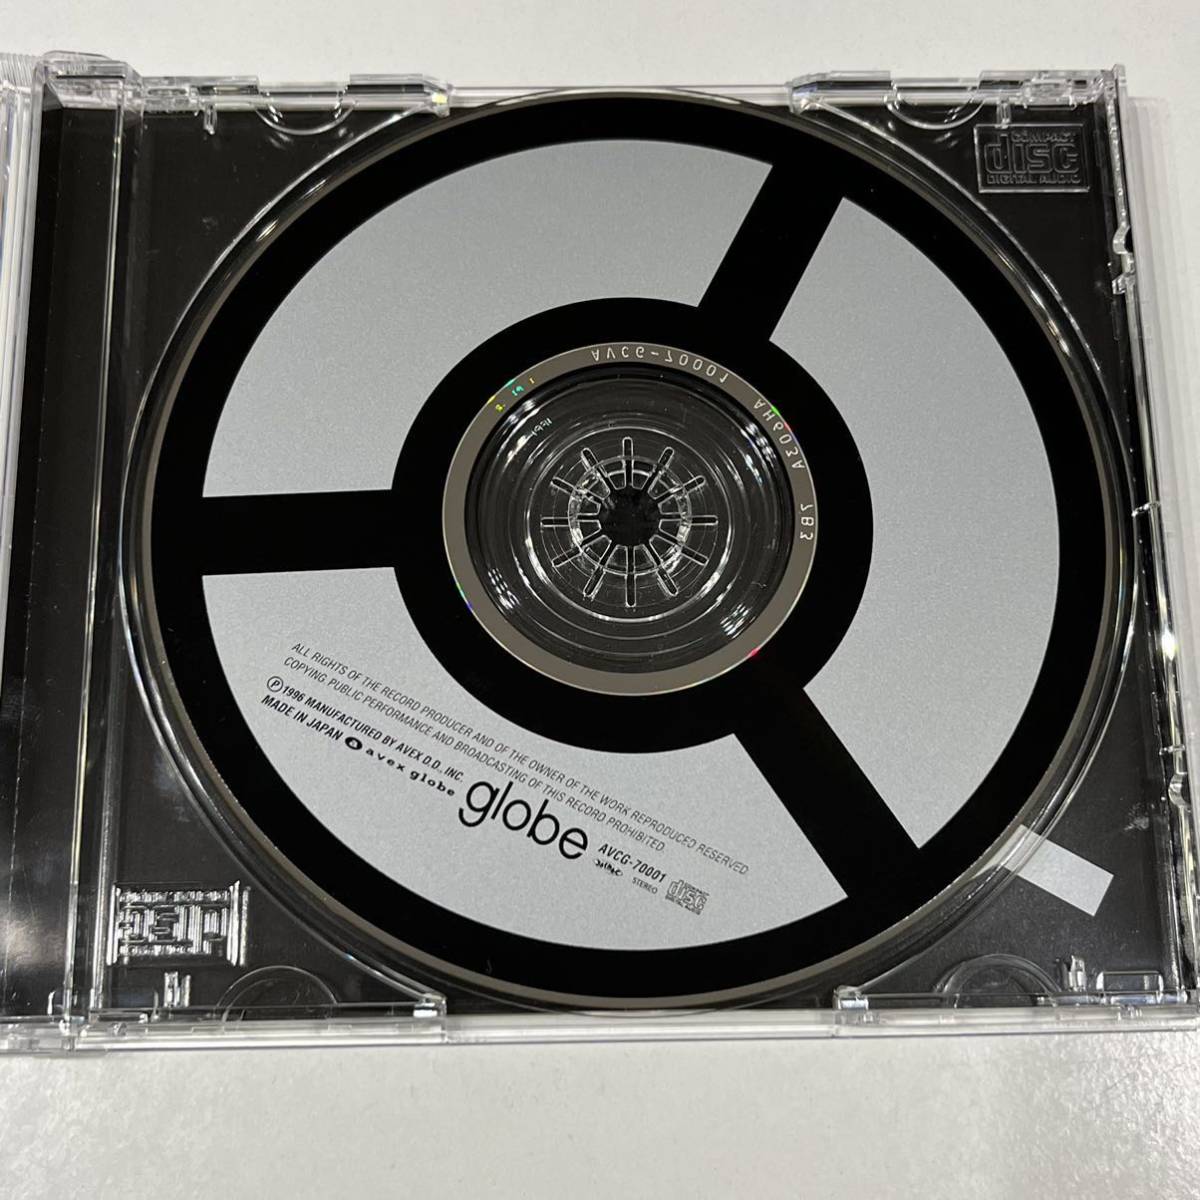  стоимость доставки 185 иен ~[ б/у * диск прекрасный товар ]globe globe альбом CD AVCG-70001 4988064700011